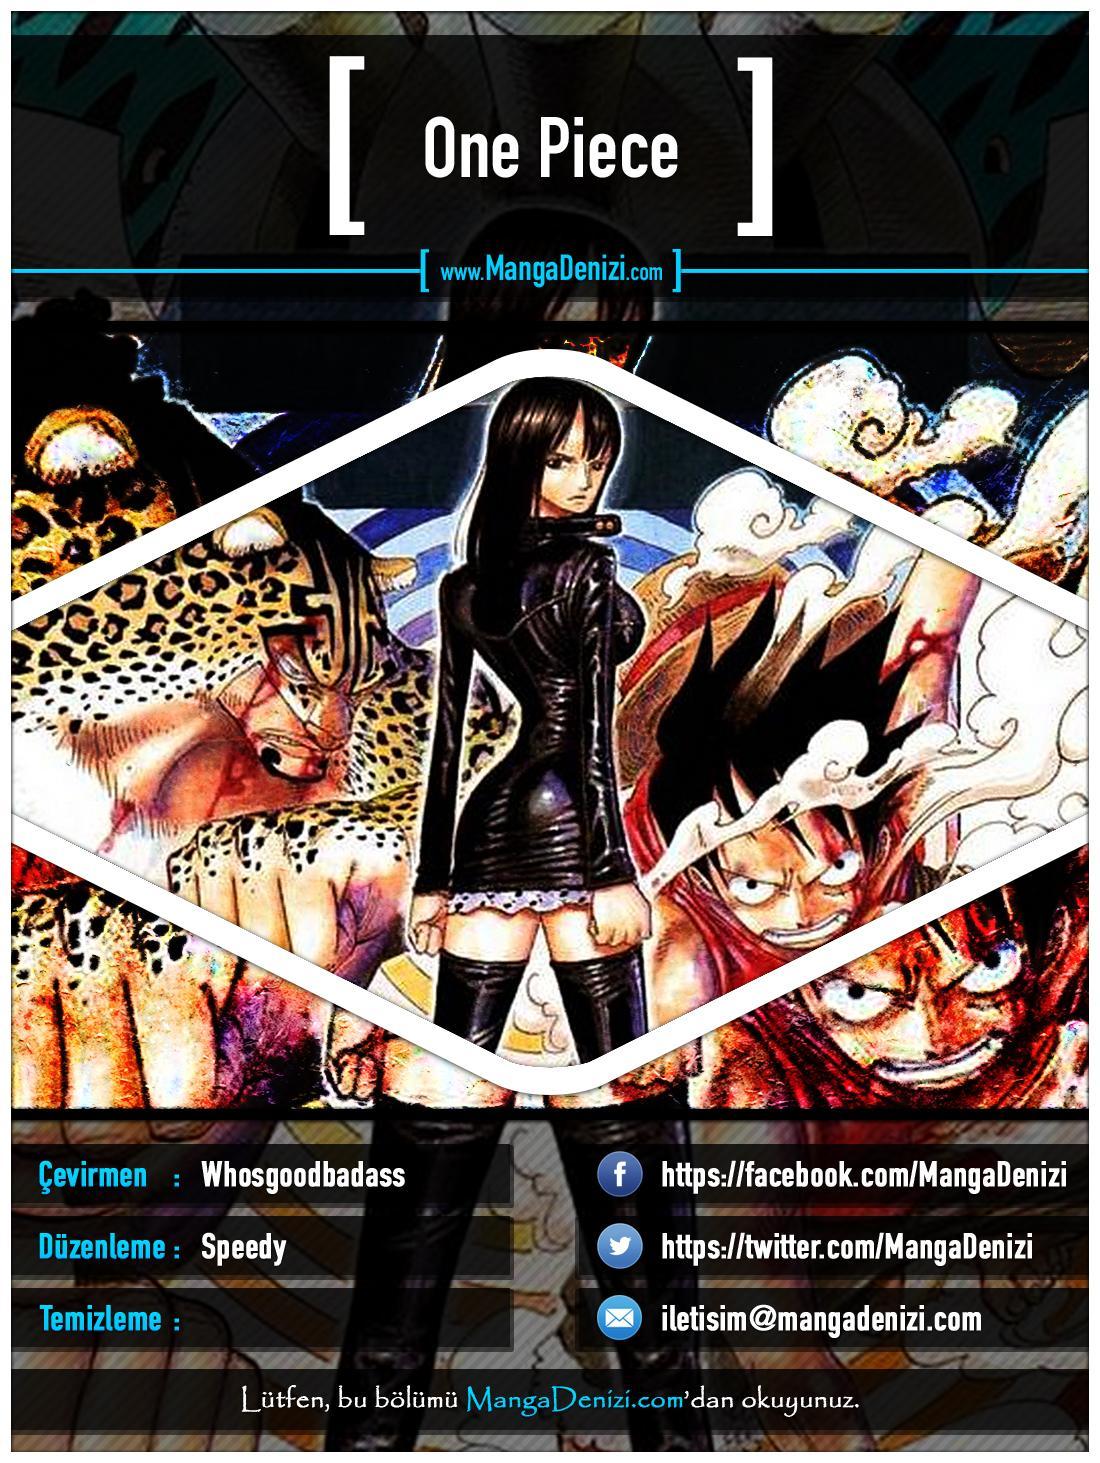 One Piece [Renkli] mangasının 0327 bölümünün 1. sayfasını okuyorsunuz.